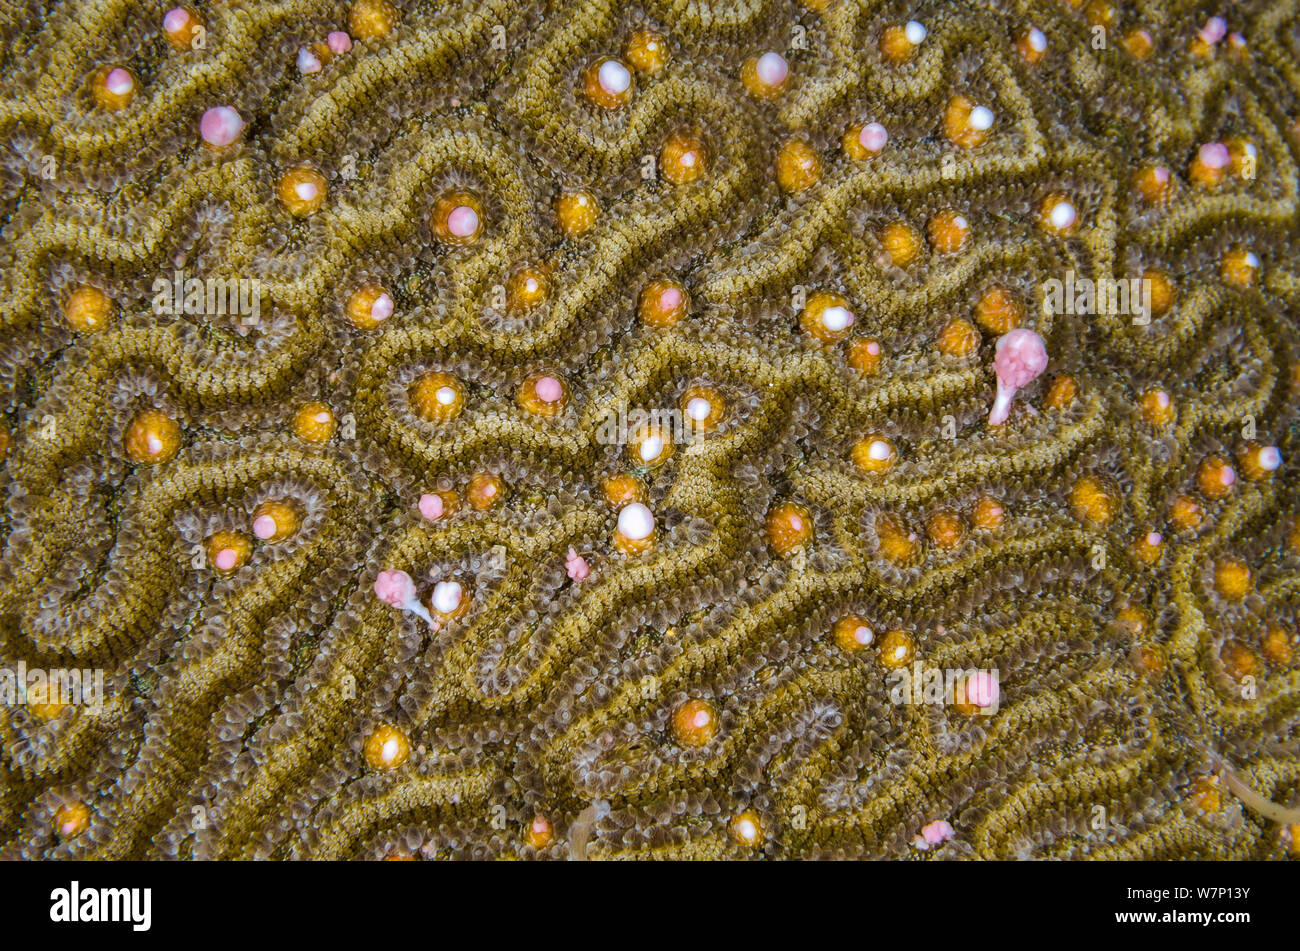 Un cervello Symmeterical coral (Diploria strigosa) la deposizione delle uova di notte, rilasciando rosa e bianco di fasci di uova e sperma da i polipi entro le sue gole, East End, Grand Cayman, Isole Cayman, British West Indies, Mar dei Caraibi. Foto Stock